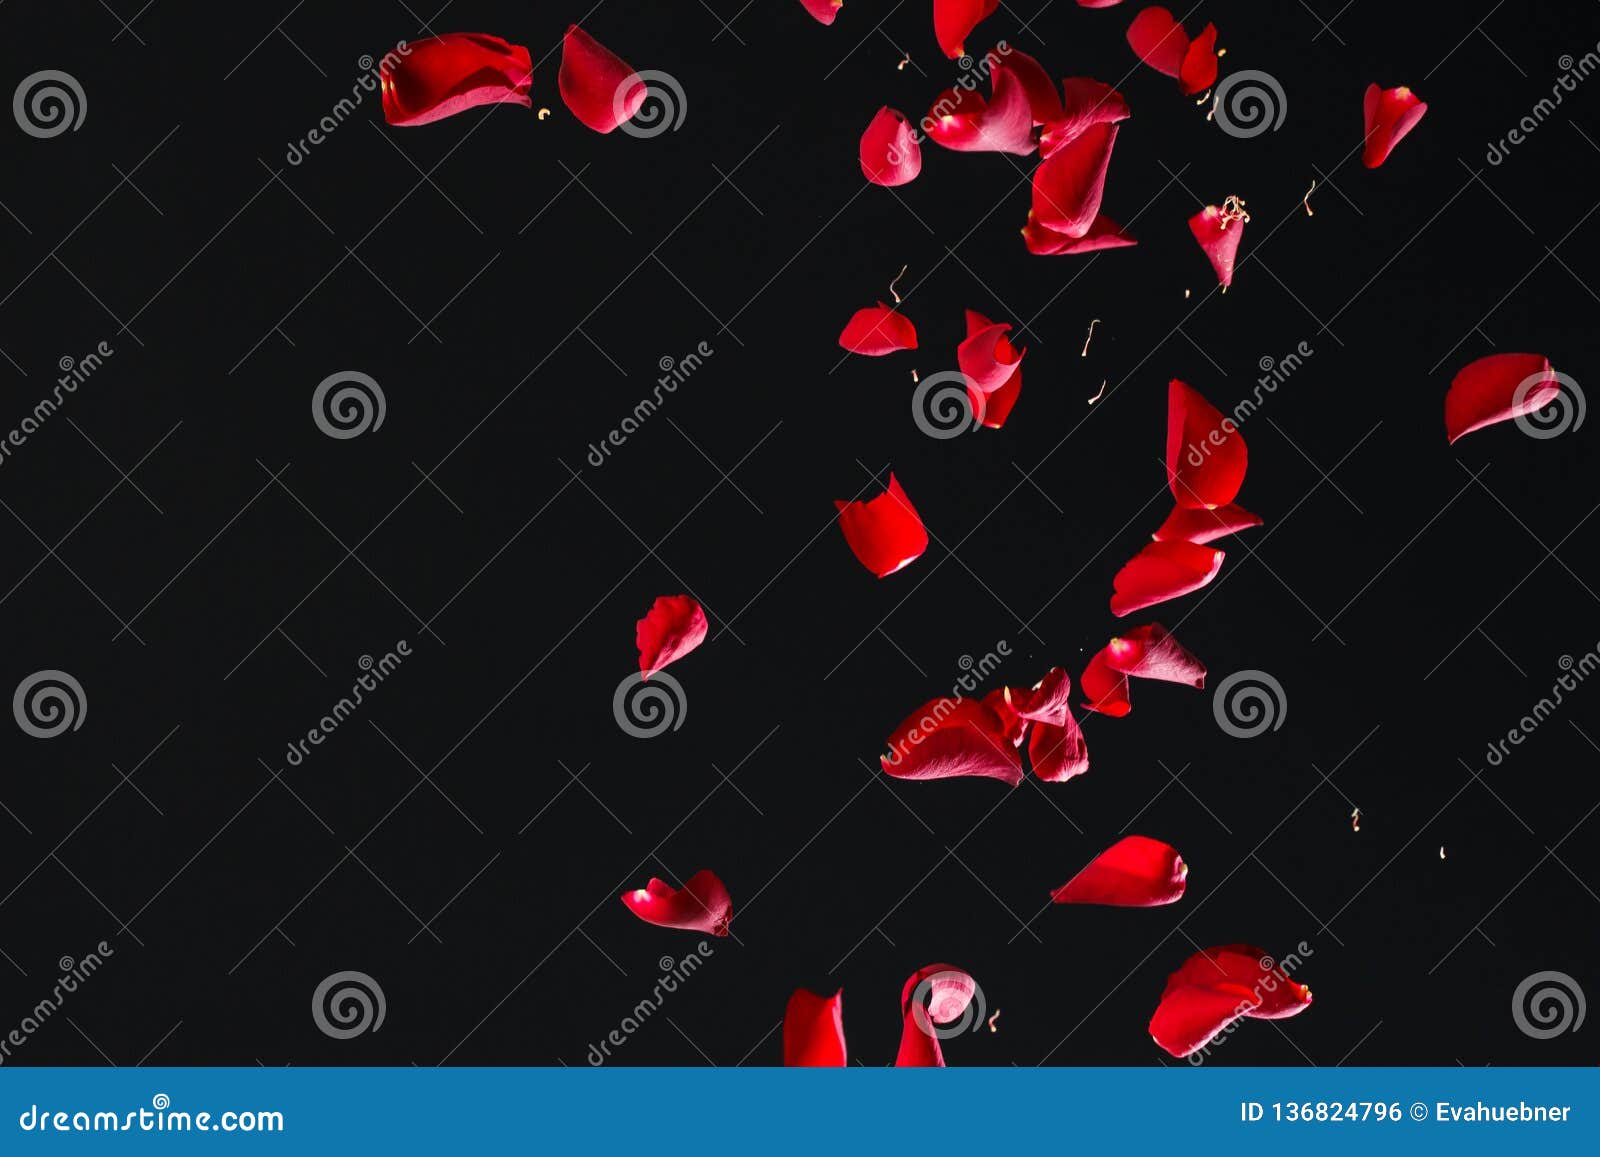 red rose petals on black background